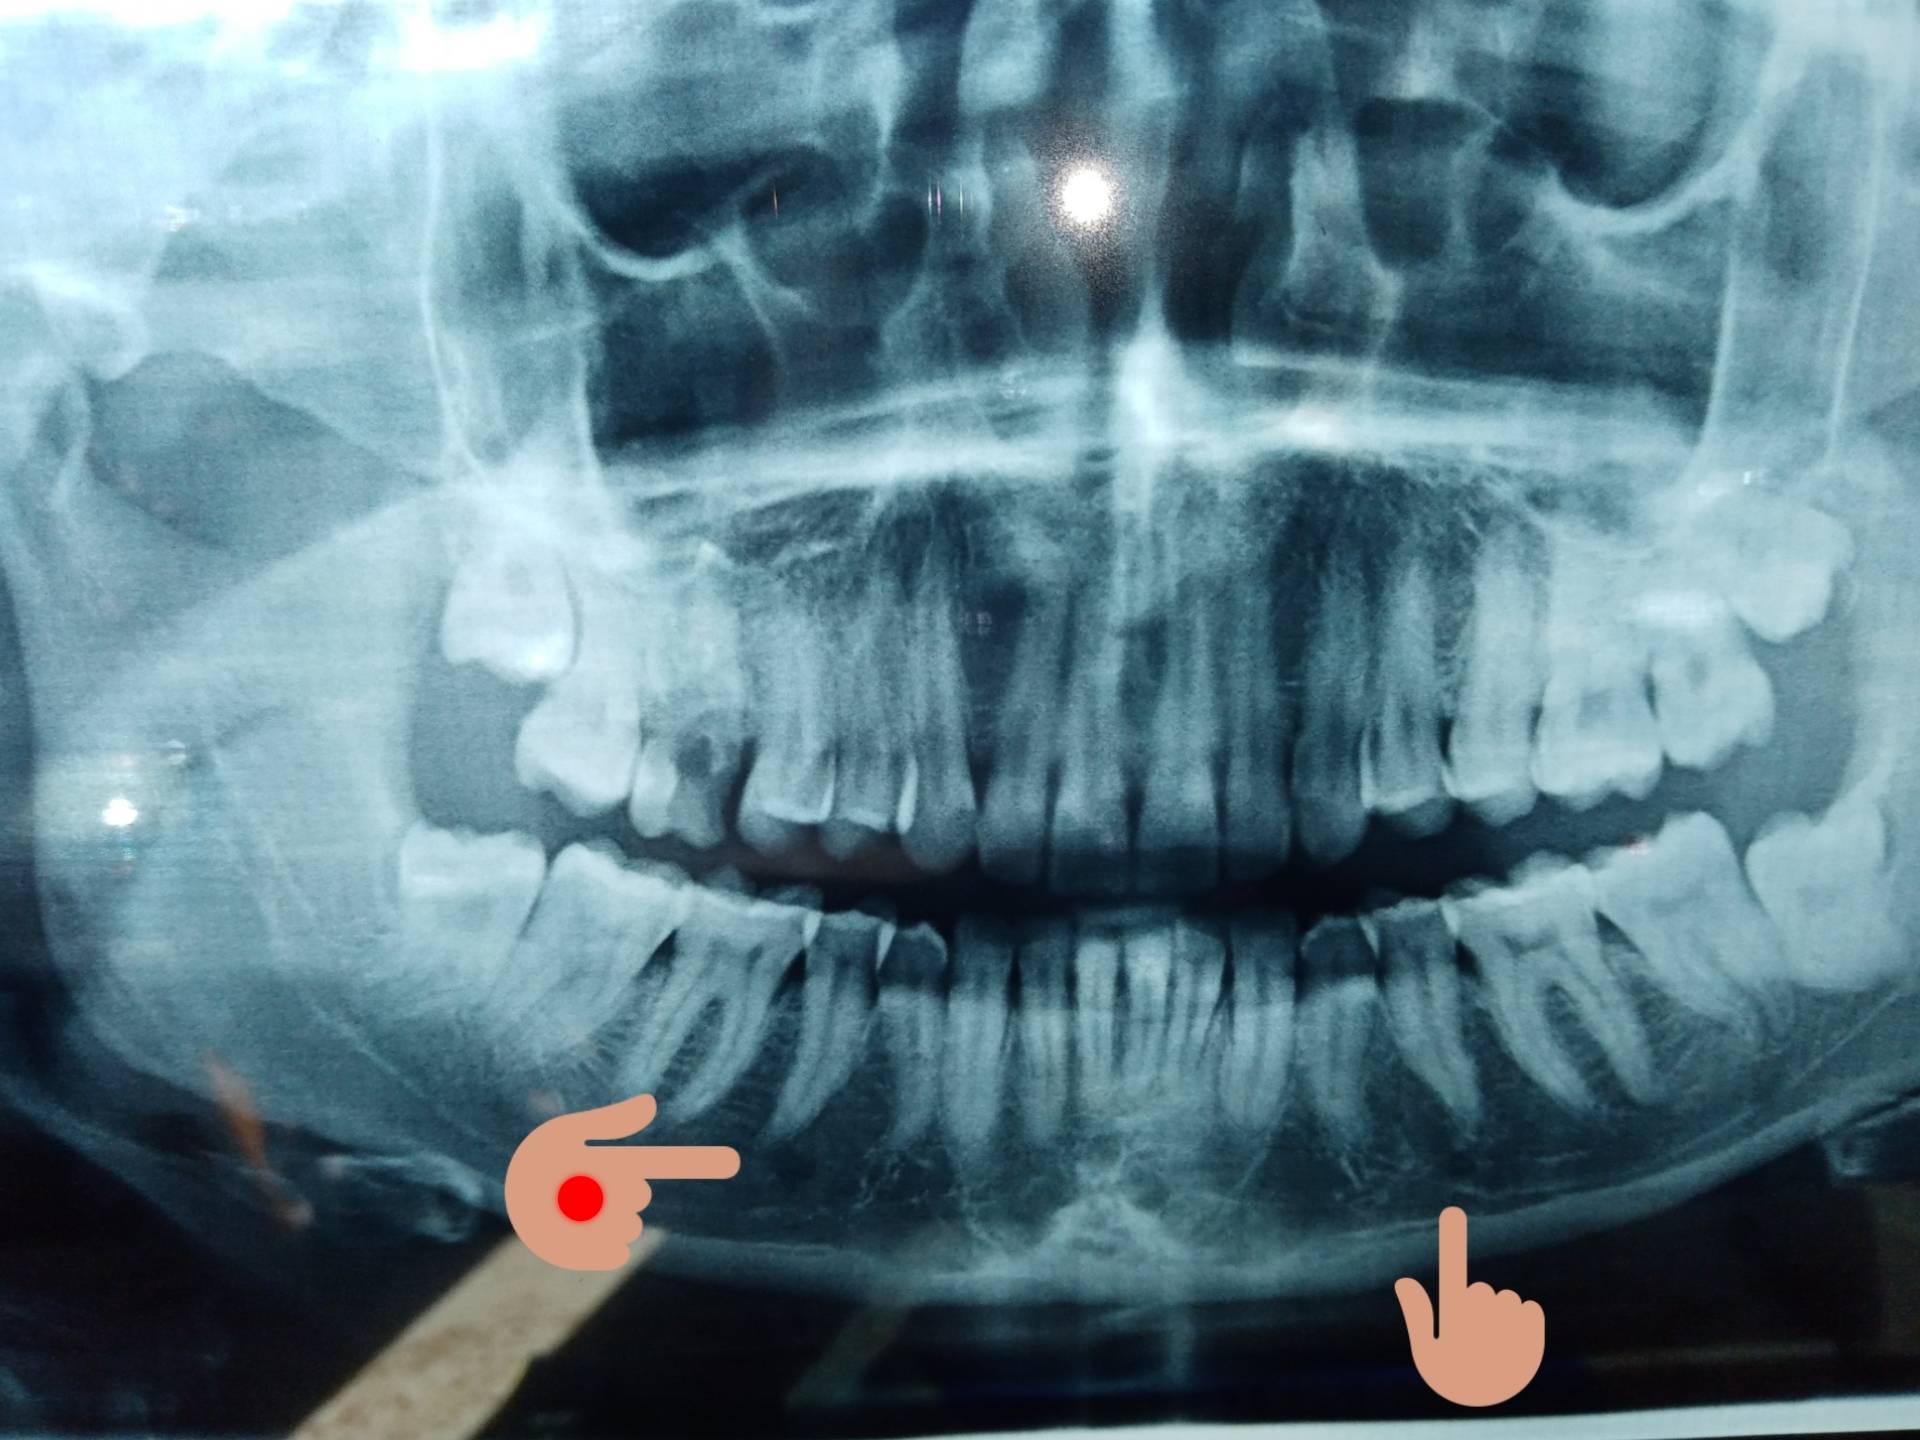 Estrazione molare superiore devitalizzato, rotto e cariato.